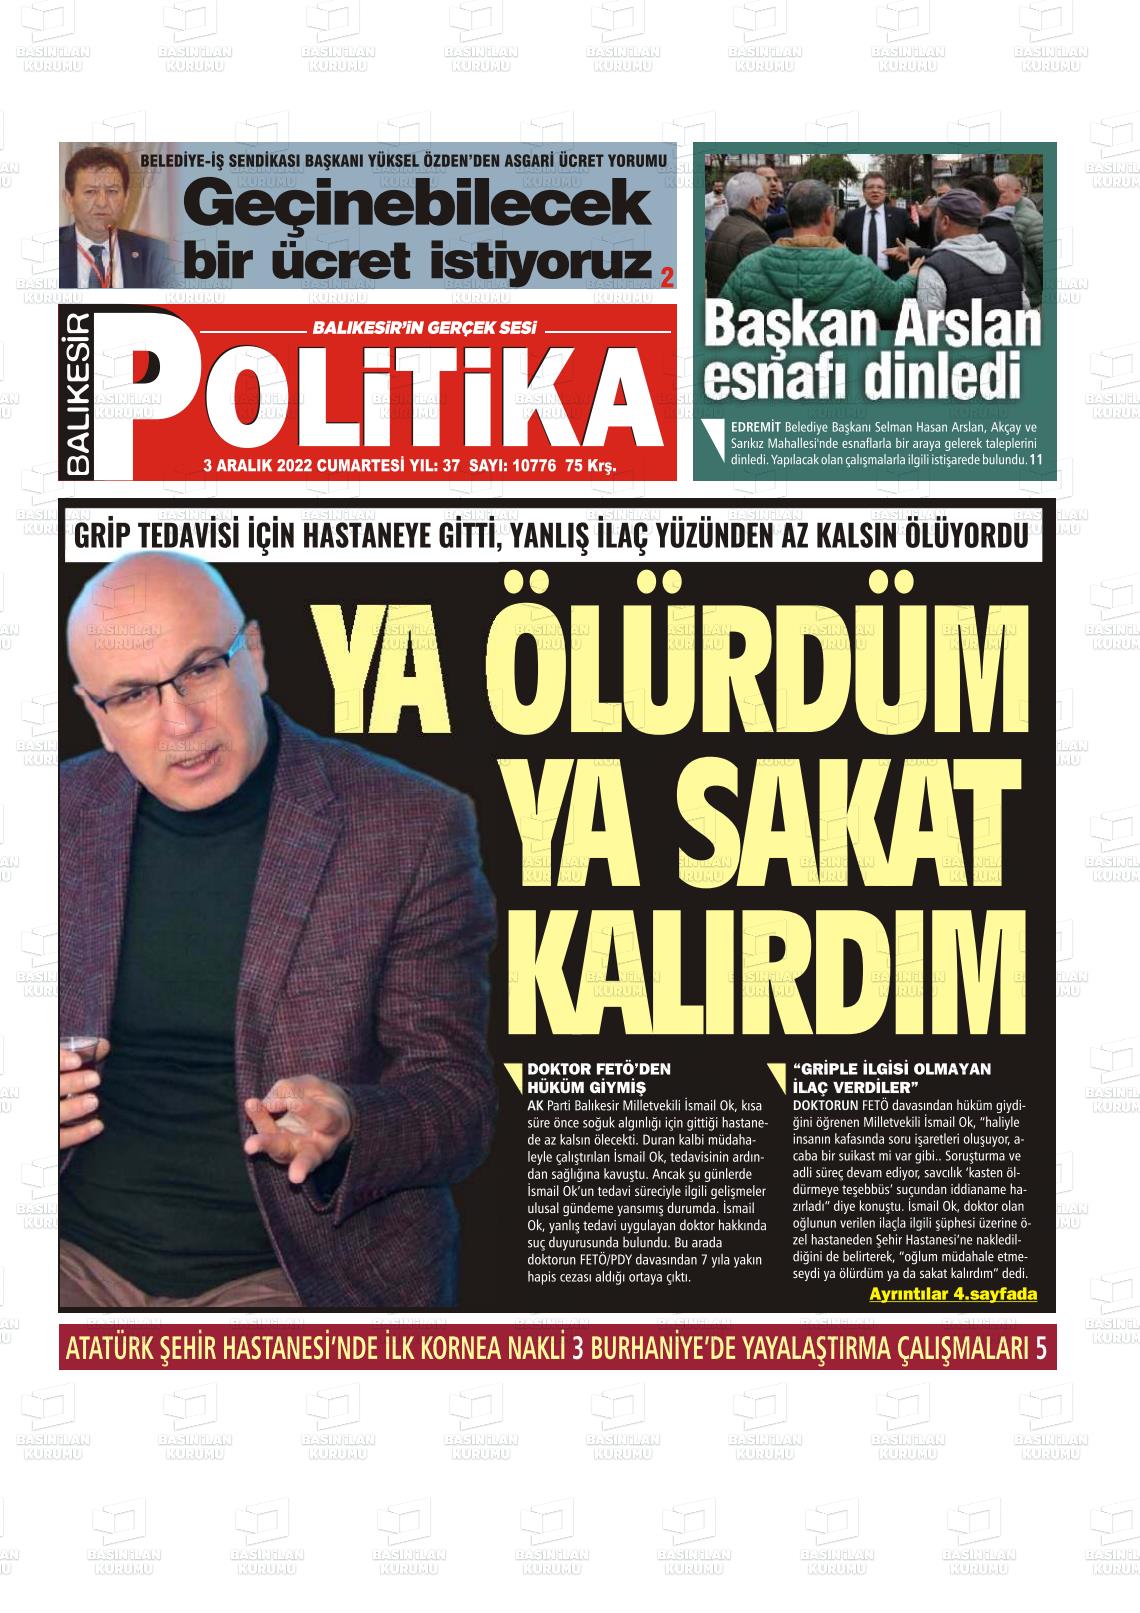 03 Aralık 2022 Balıkesir Politika Gazete Manşeti